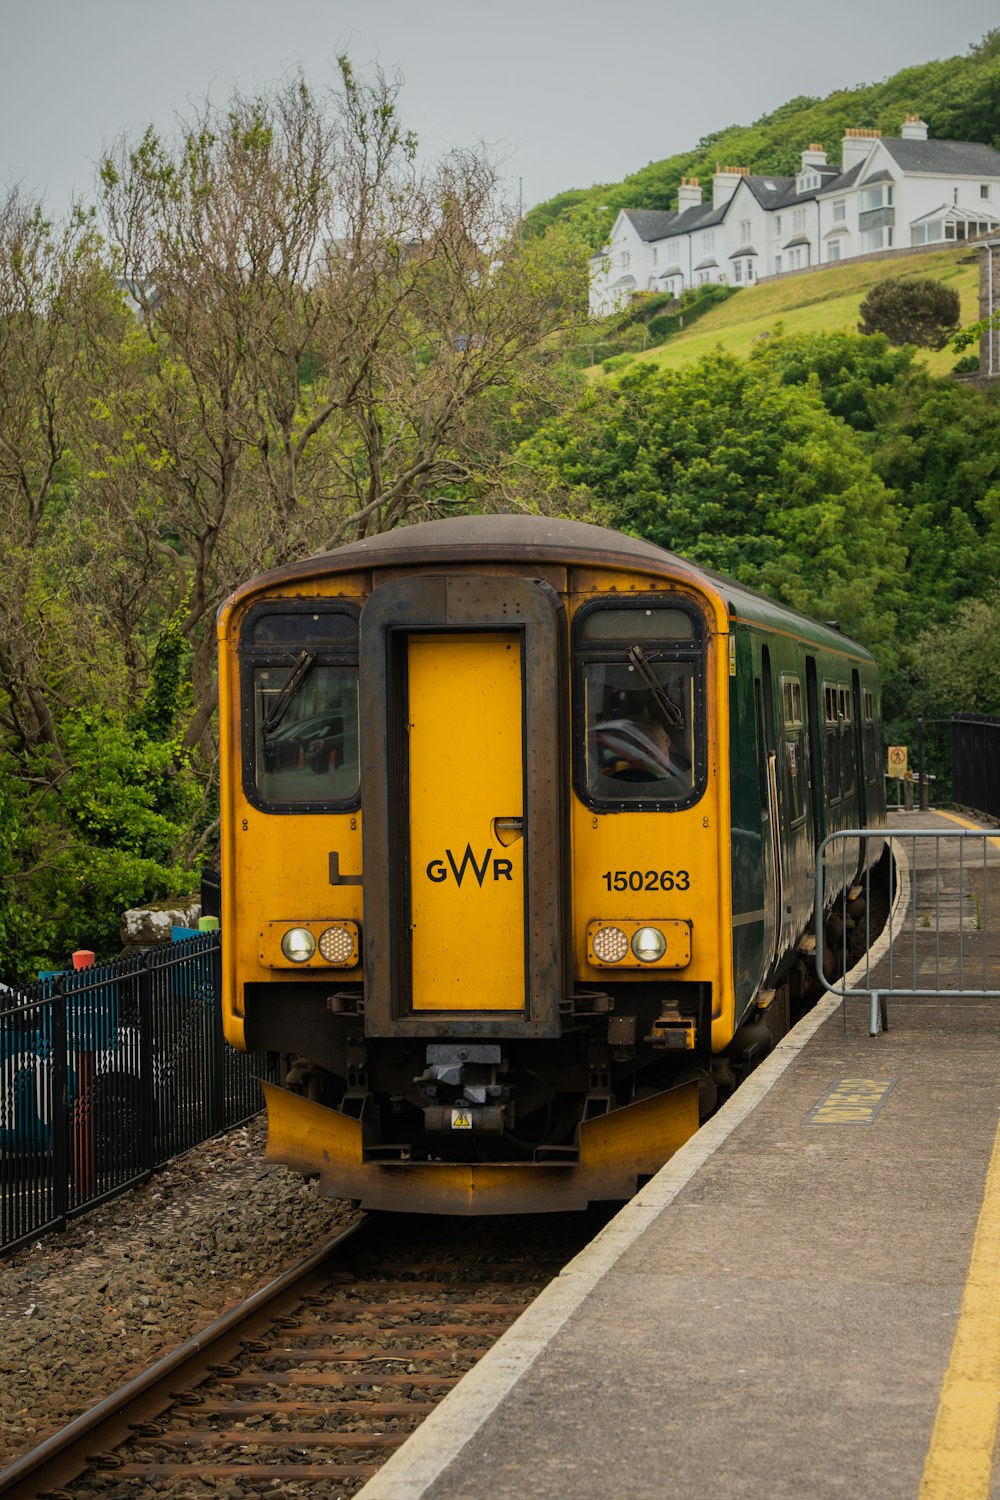 un treno giallo che entra in una stazione ferroviaria